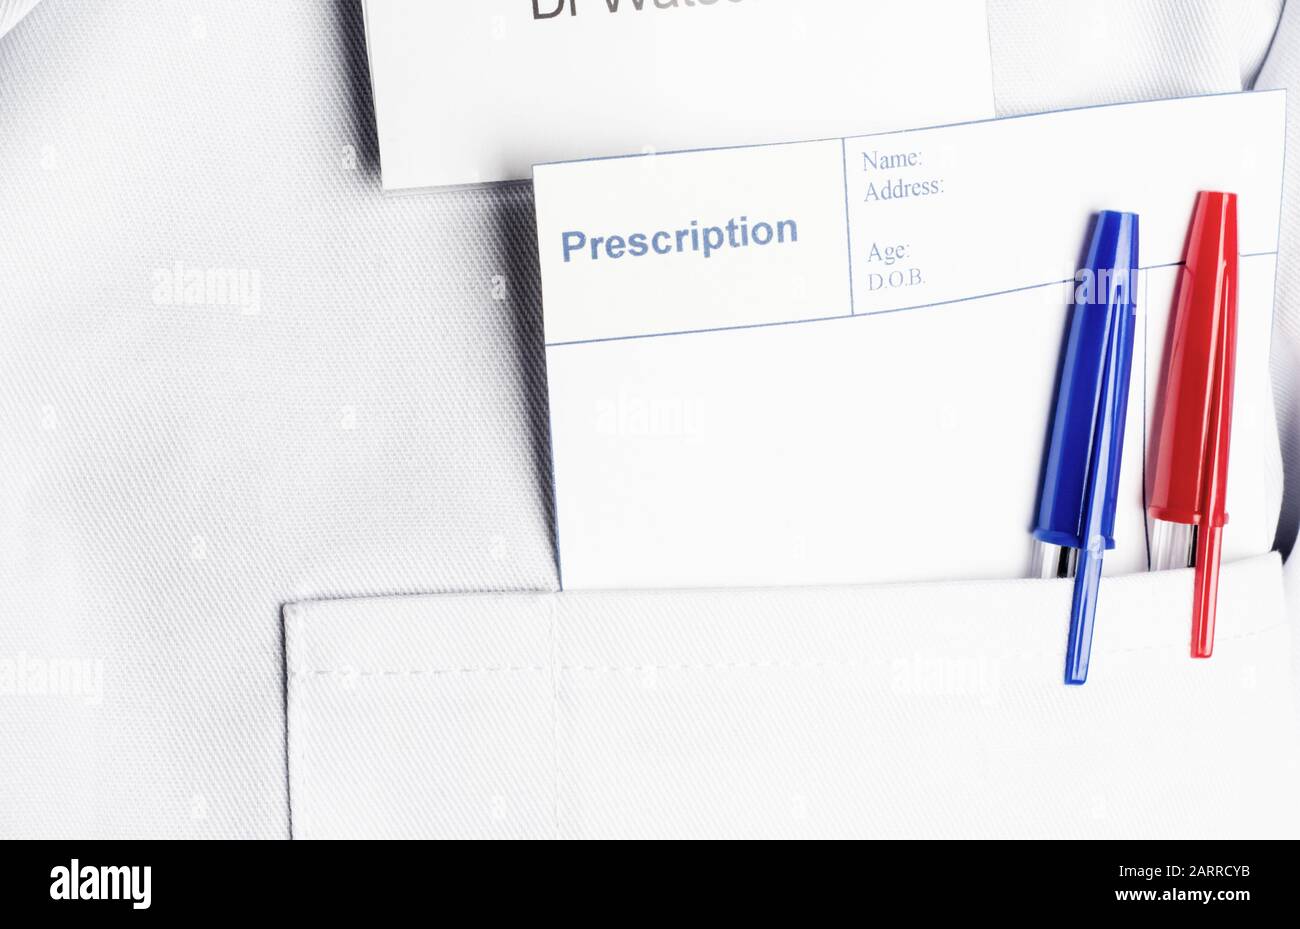 Una prescrizione vuota e due penne che poking fuori da una tasca bianca del rivestimento del medico, fornendo lo spazio della copia per un messaggio. Foto Stock